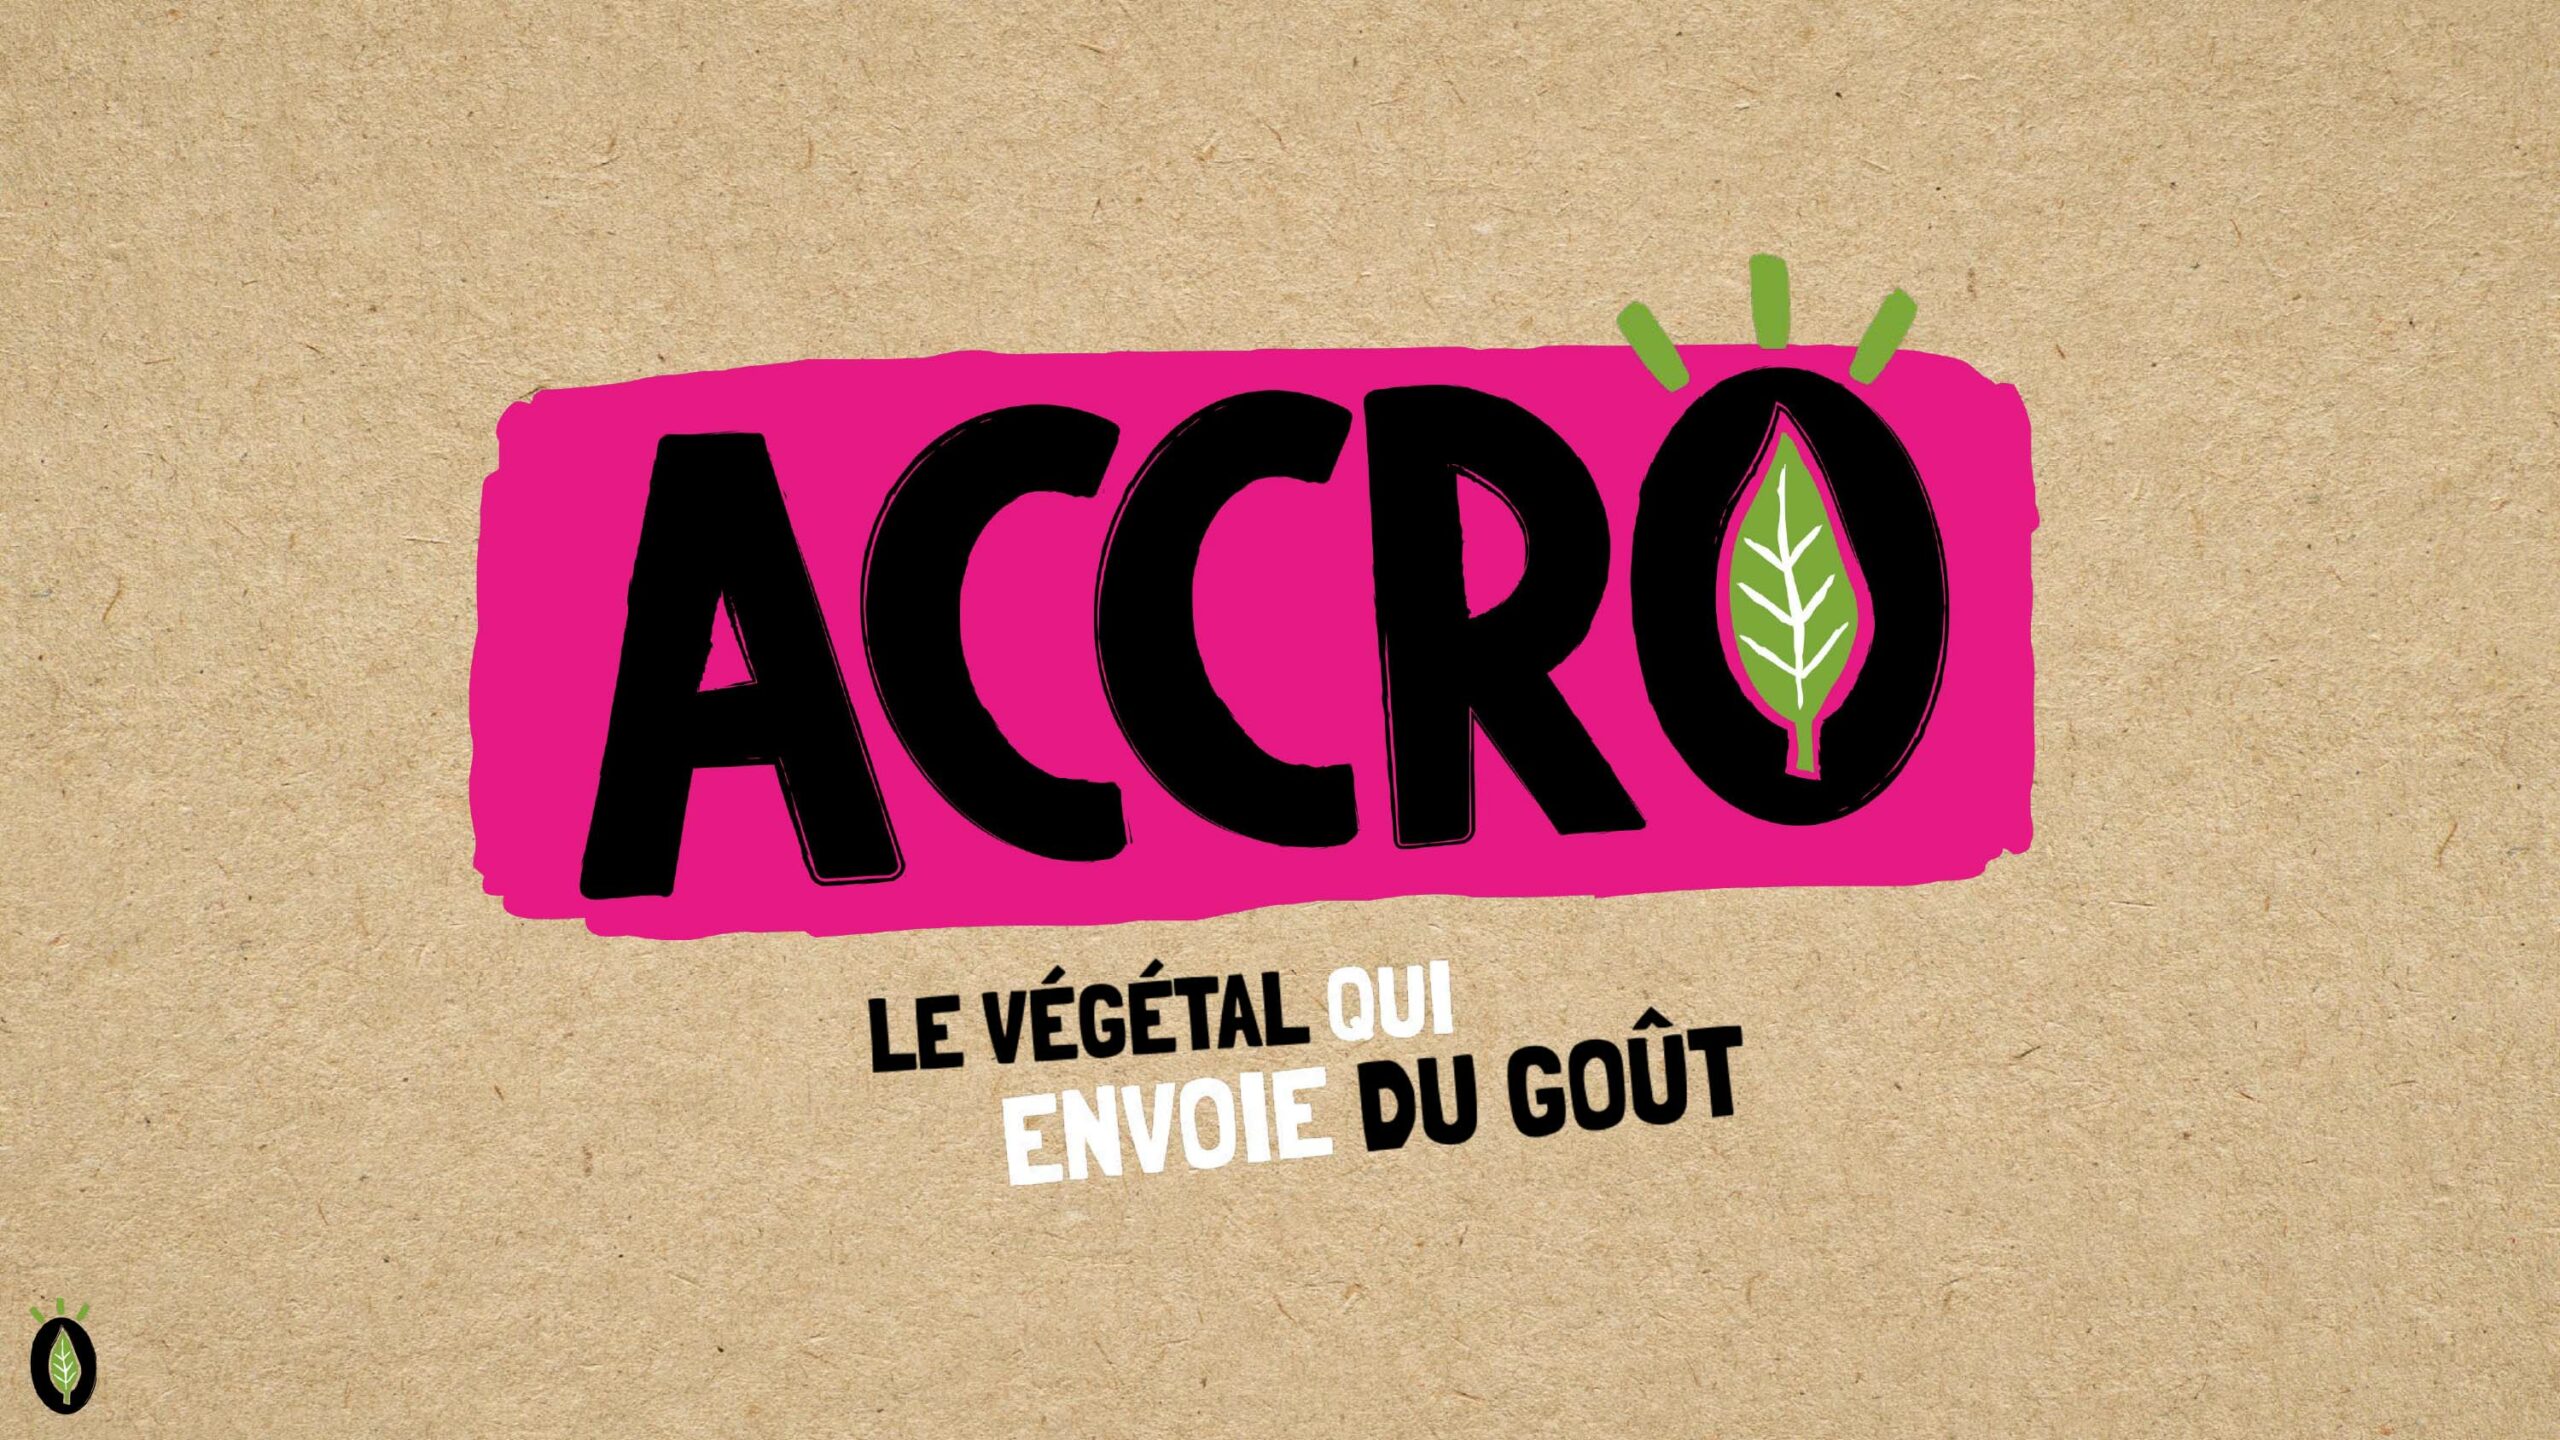 Logo et signature de la marque de steak végétal ACCRO